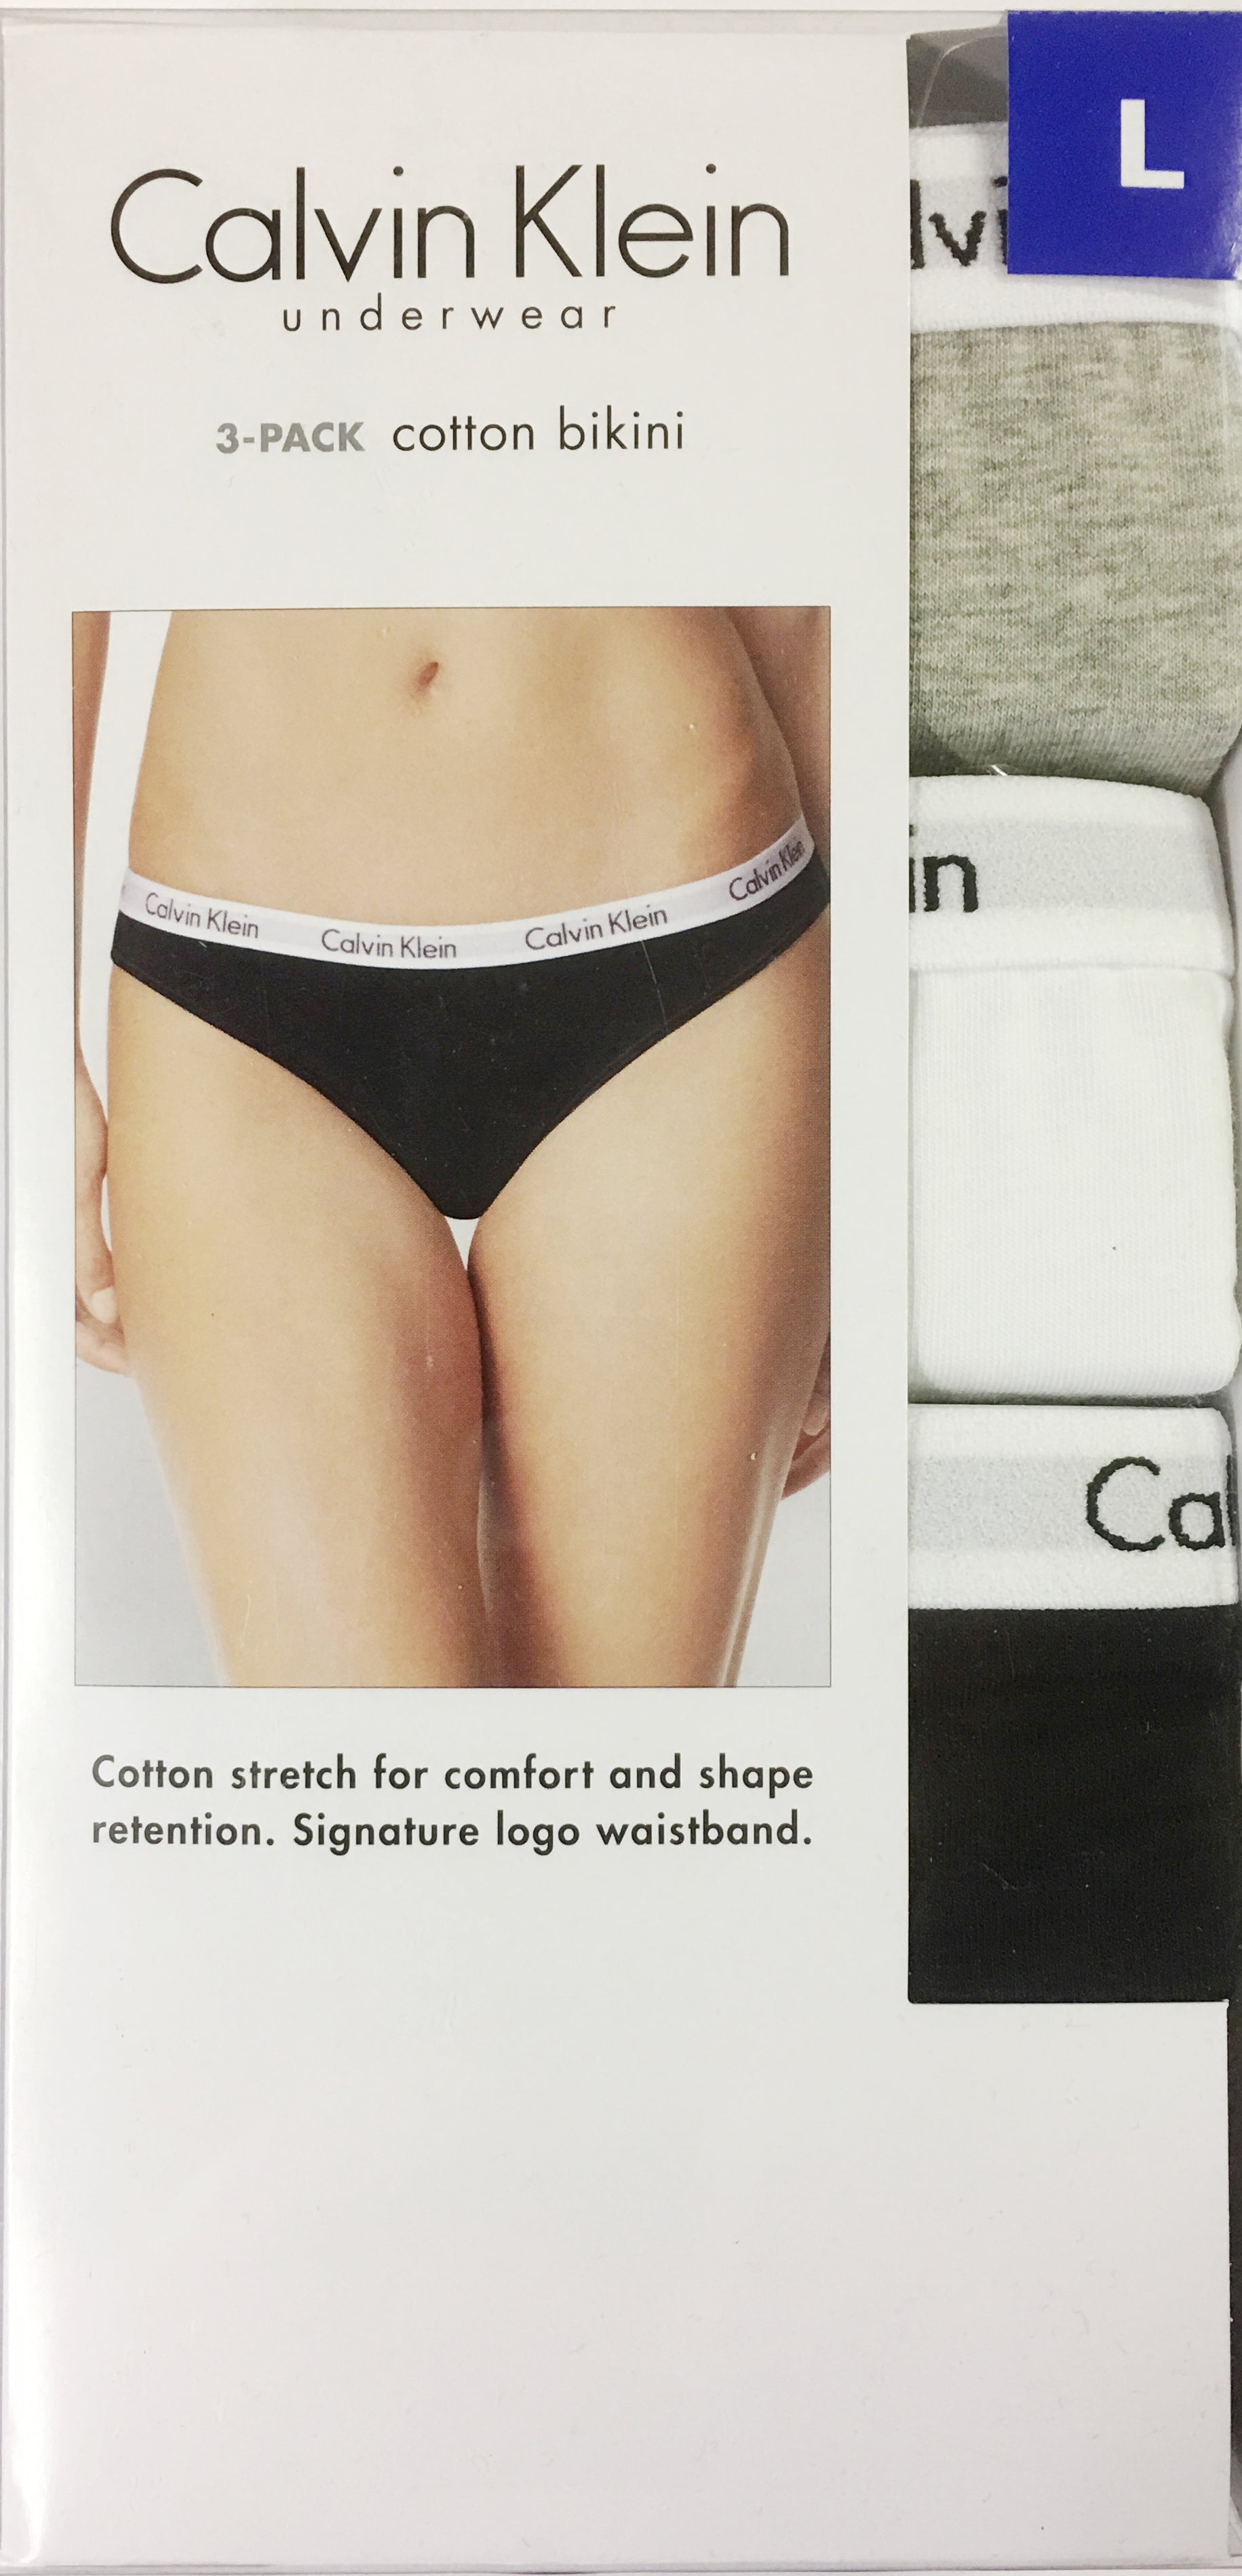 Calvin Klein Womens Carousel Logo Cotton Thong Panty 3 Pack 3